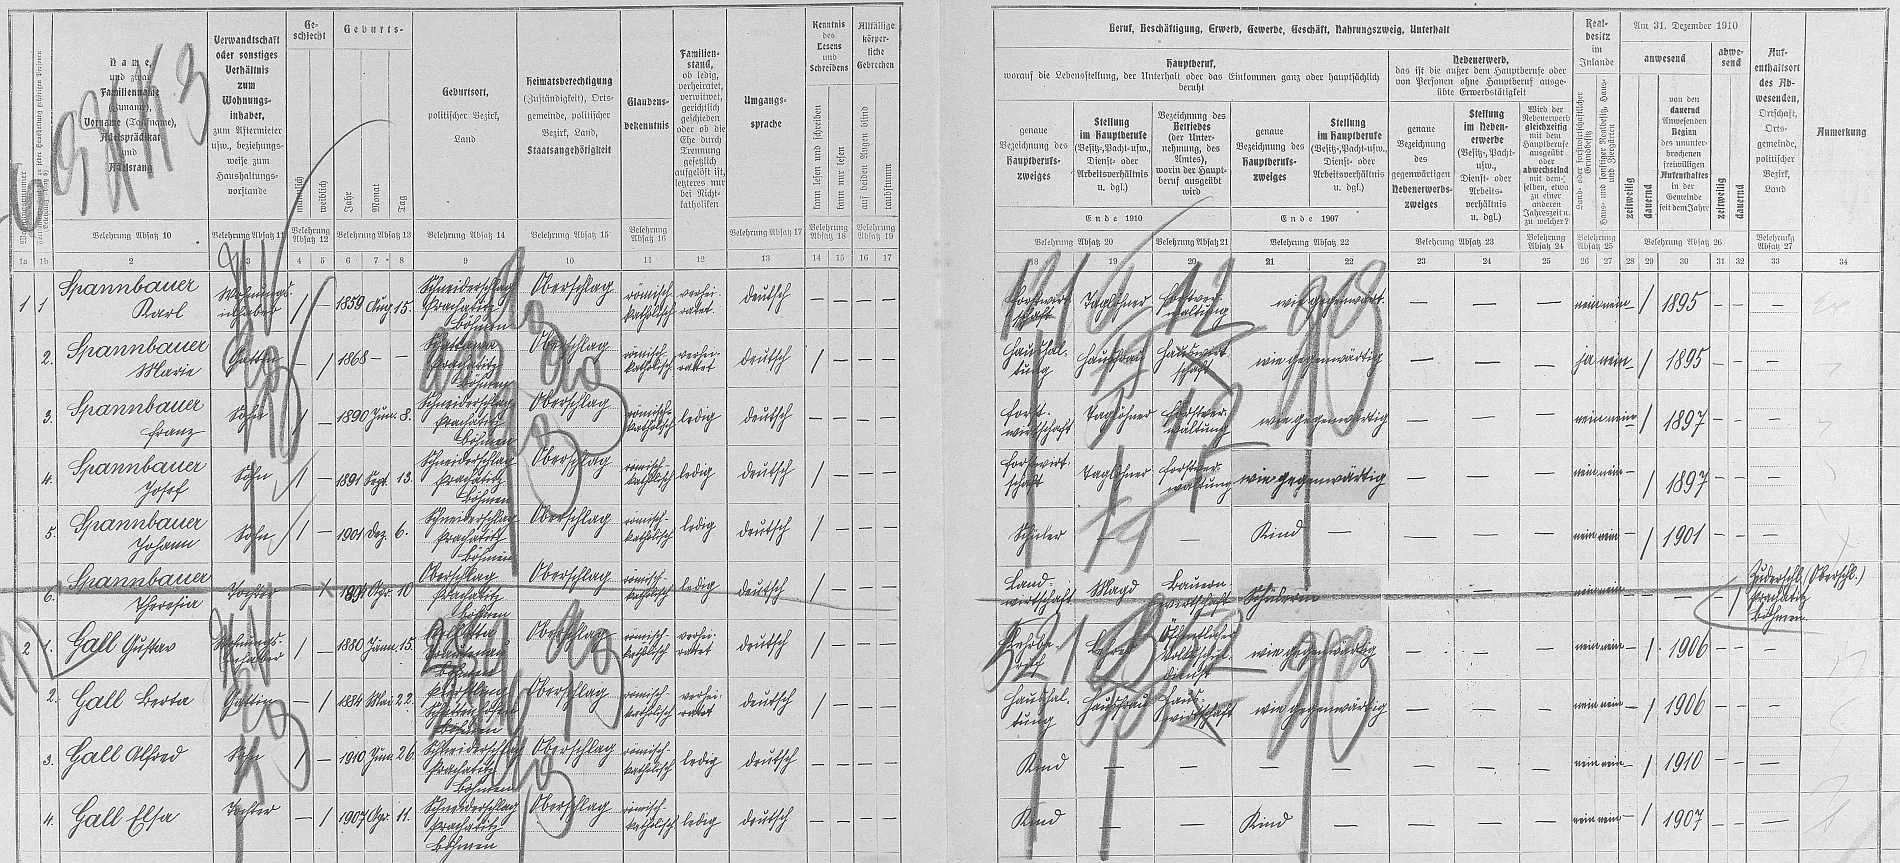 Arch sčítání lidu z roku 1910 pro stavení čp. 14 v Krejčovicích i s ním